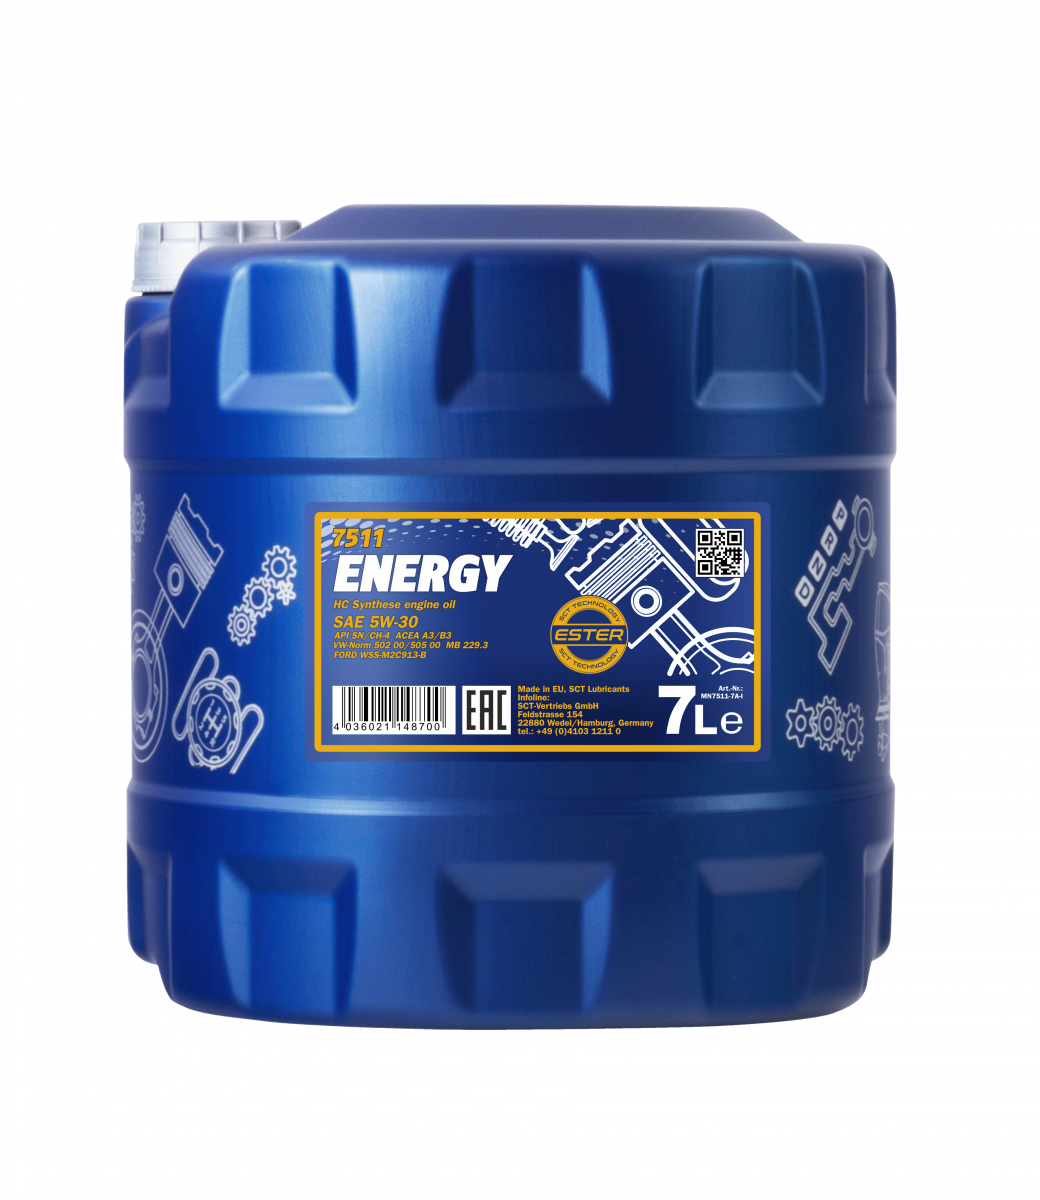 Mannol - 7511 Energy 5W-30 7L Engine Oil